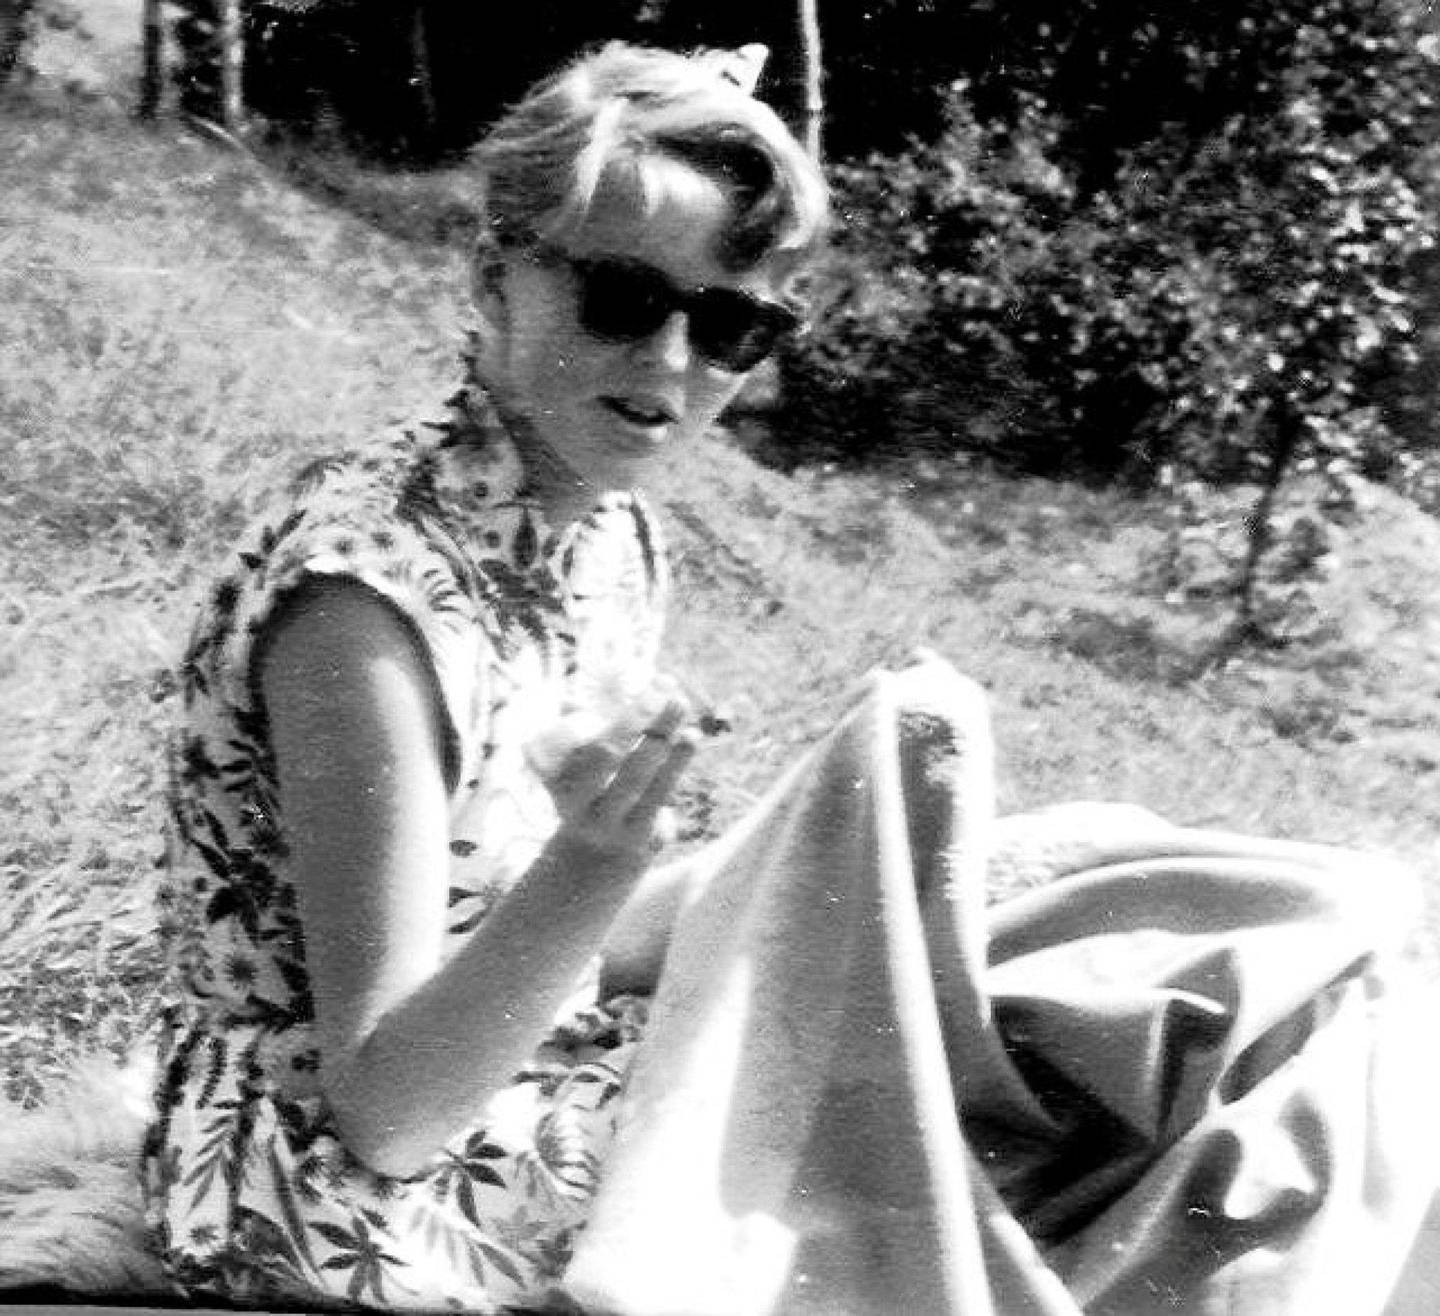 Astrid drømte om kjøpegenser perlekjede, men måtte stort sett sy klærne sine selv. Her sitter hun på hytta og syr på bunaden sin - i hjemmesydd sommerkjole. Foto: Hilde Unosen